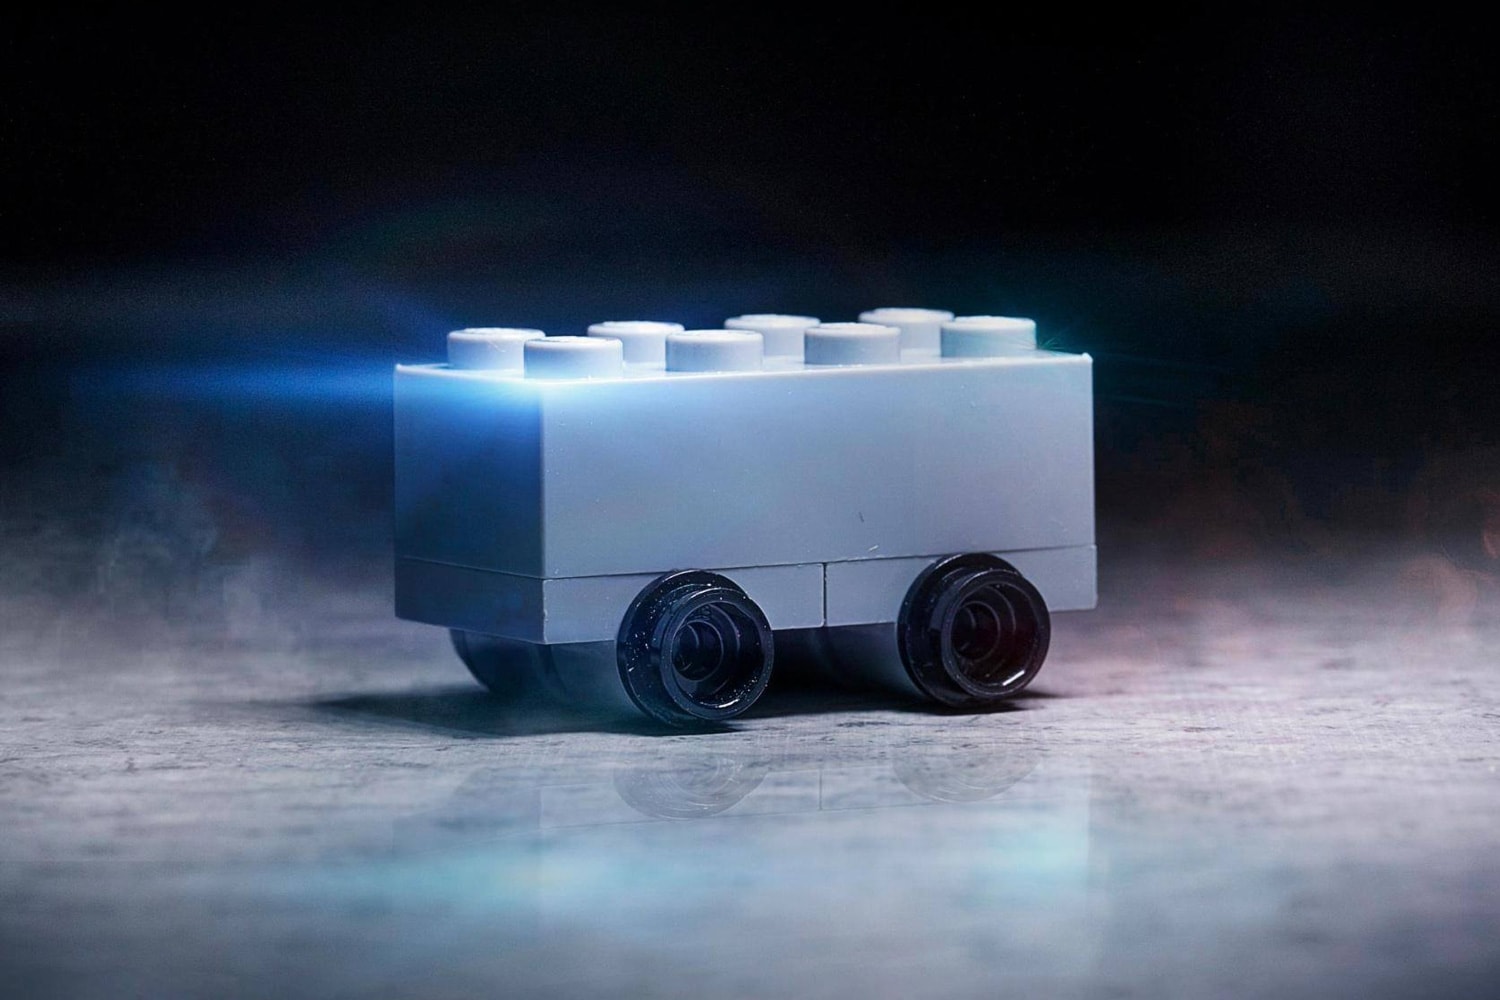 Lego australia Trolls Tesla's Cybertruck With Shatterproof Bricks mock internet meme elon musk jokes 